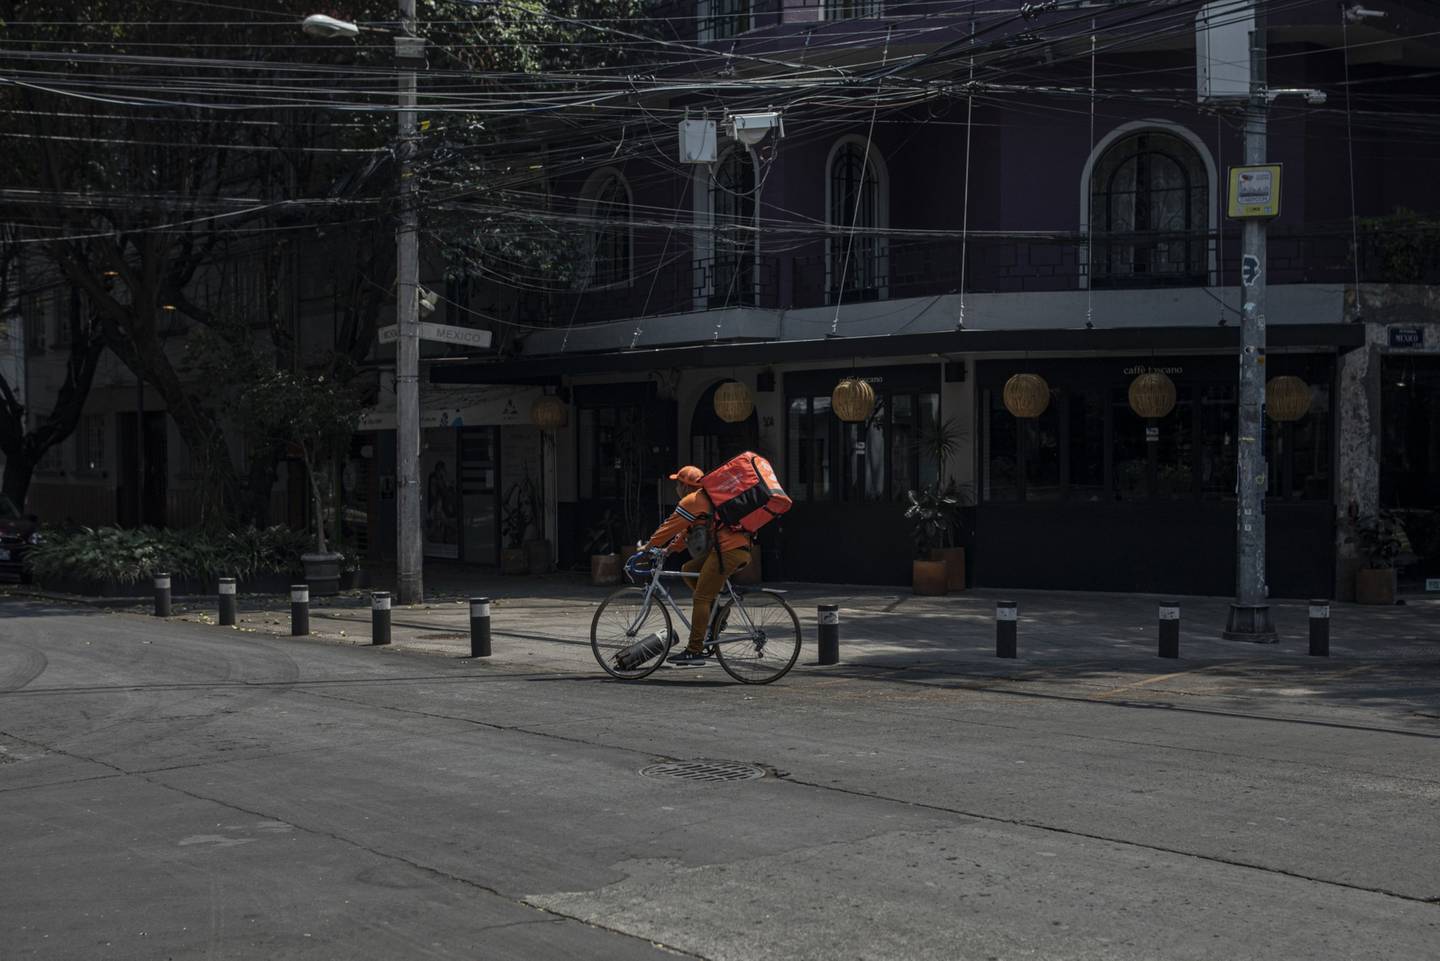 A Rappi delivery rider in Mexico City in April 2020.dfd